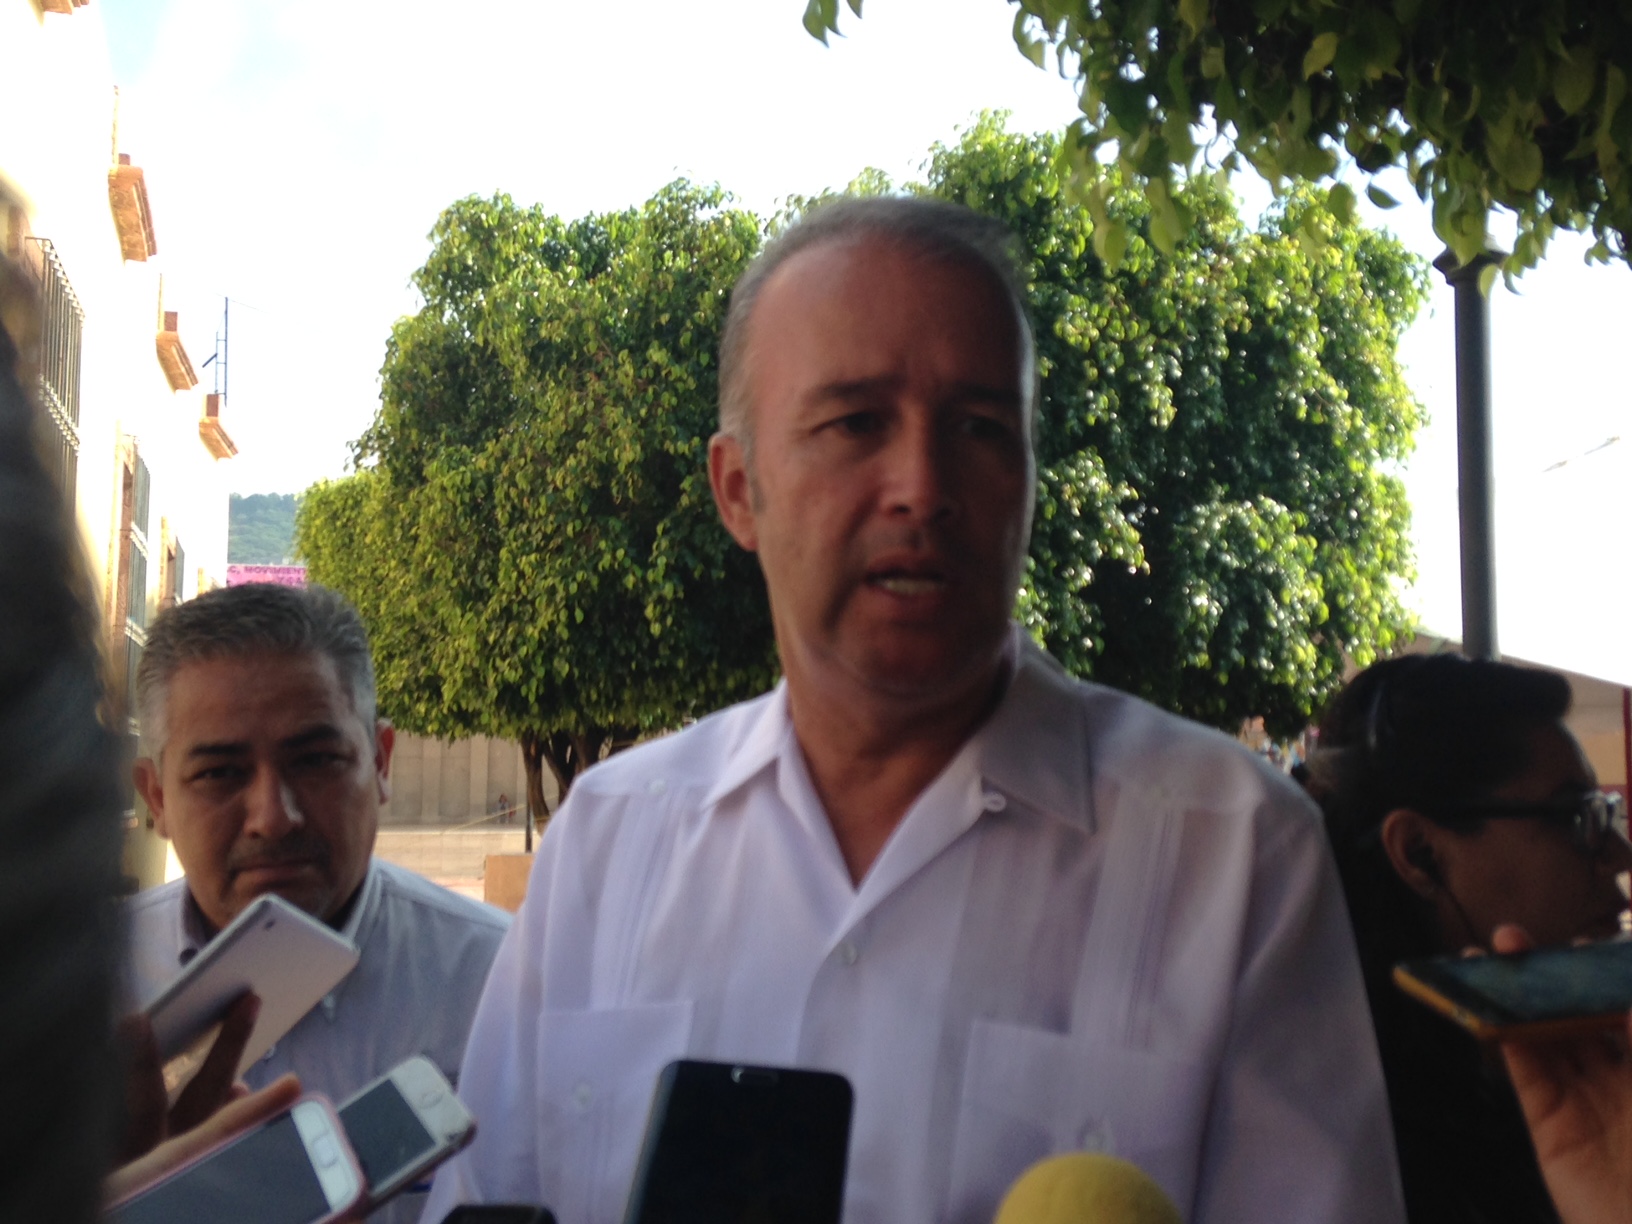  Mario Calzada se compromete a implementar “tolerancia cero” a actos de corrupción